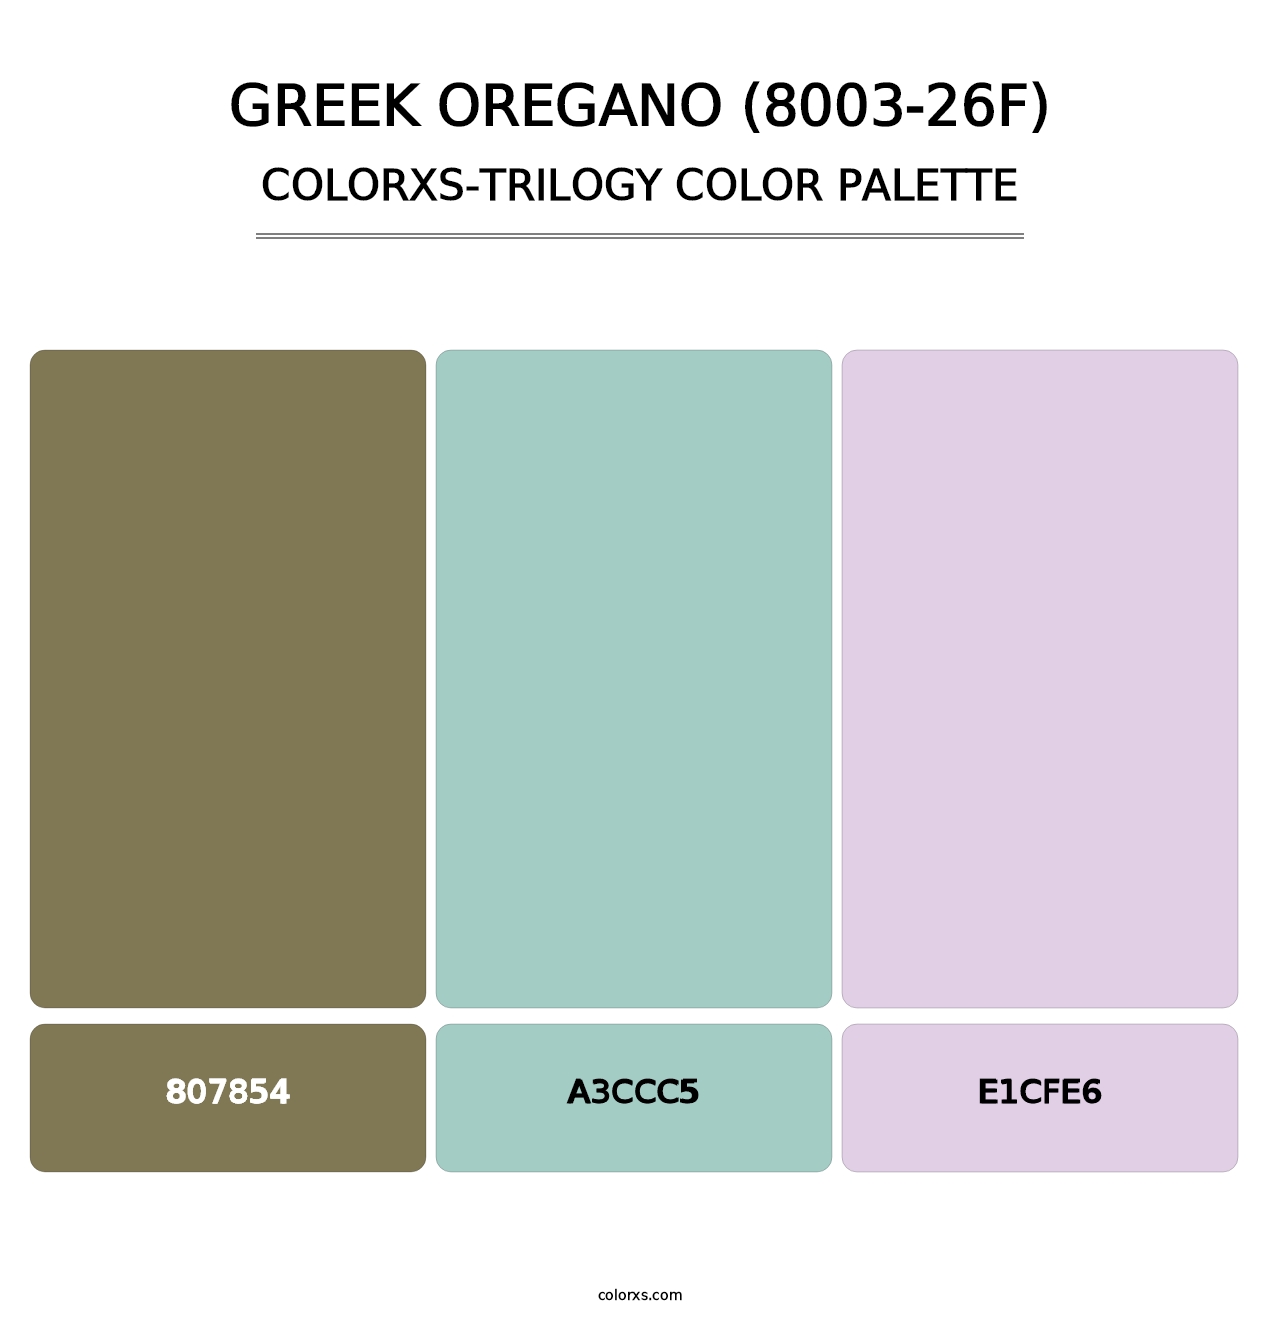 Greek Oregano (8003-26F) - Colorxs Trilogy Palette